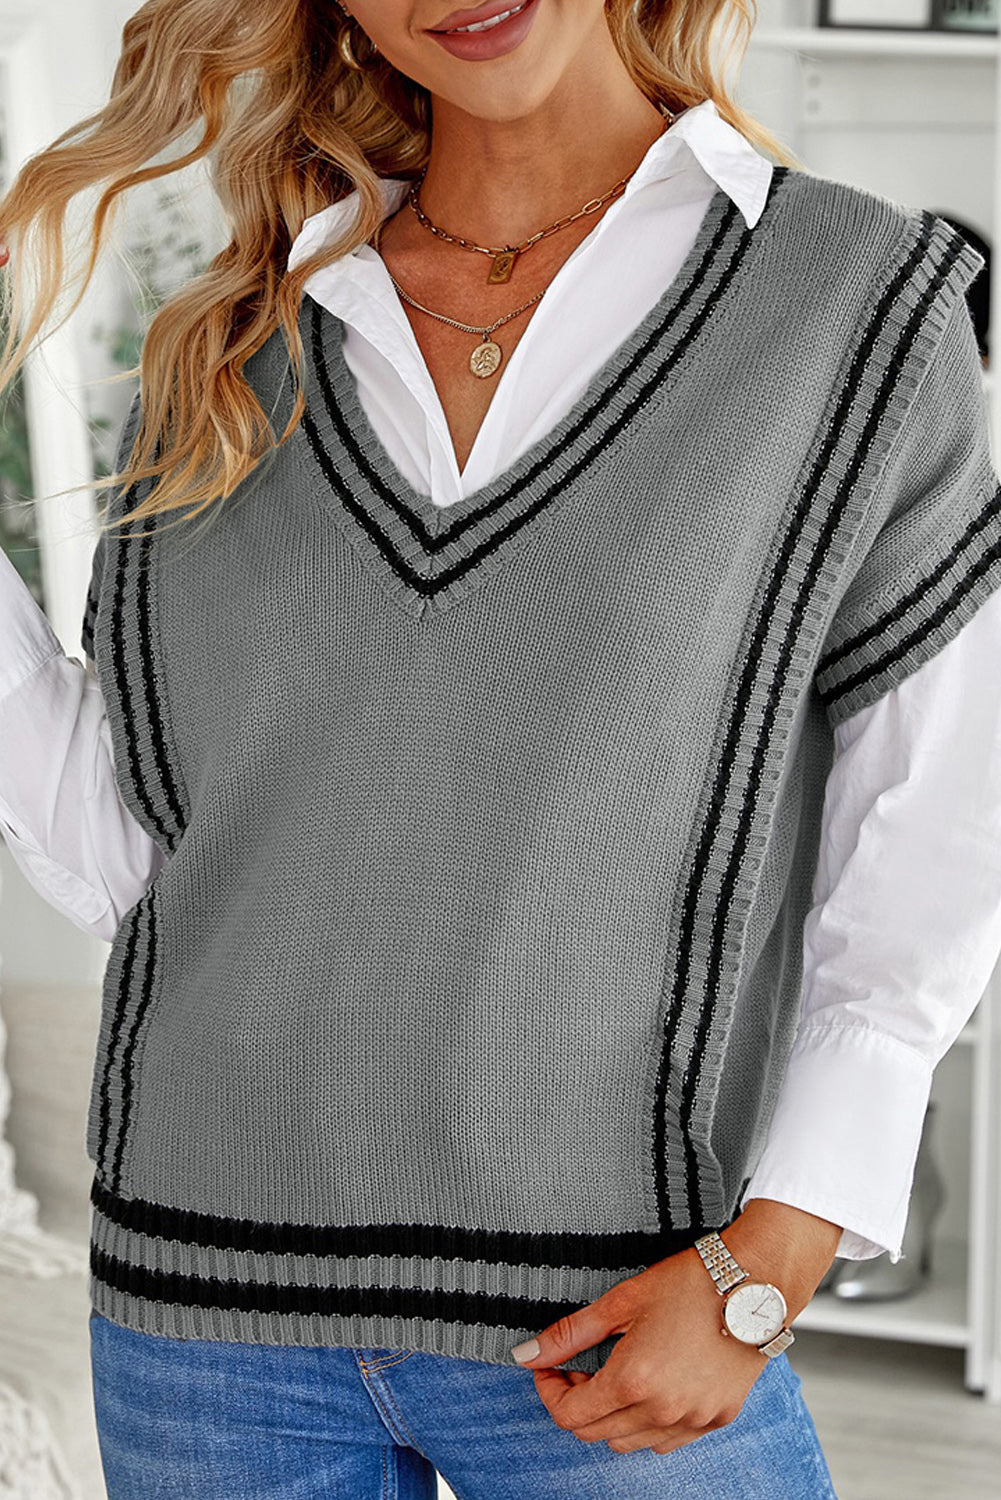 Siv pulover s kratkimi rokavi in ​​obrobami s kontrastnimi črtami v izrezu